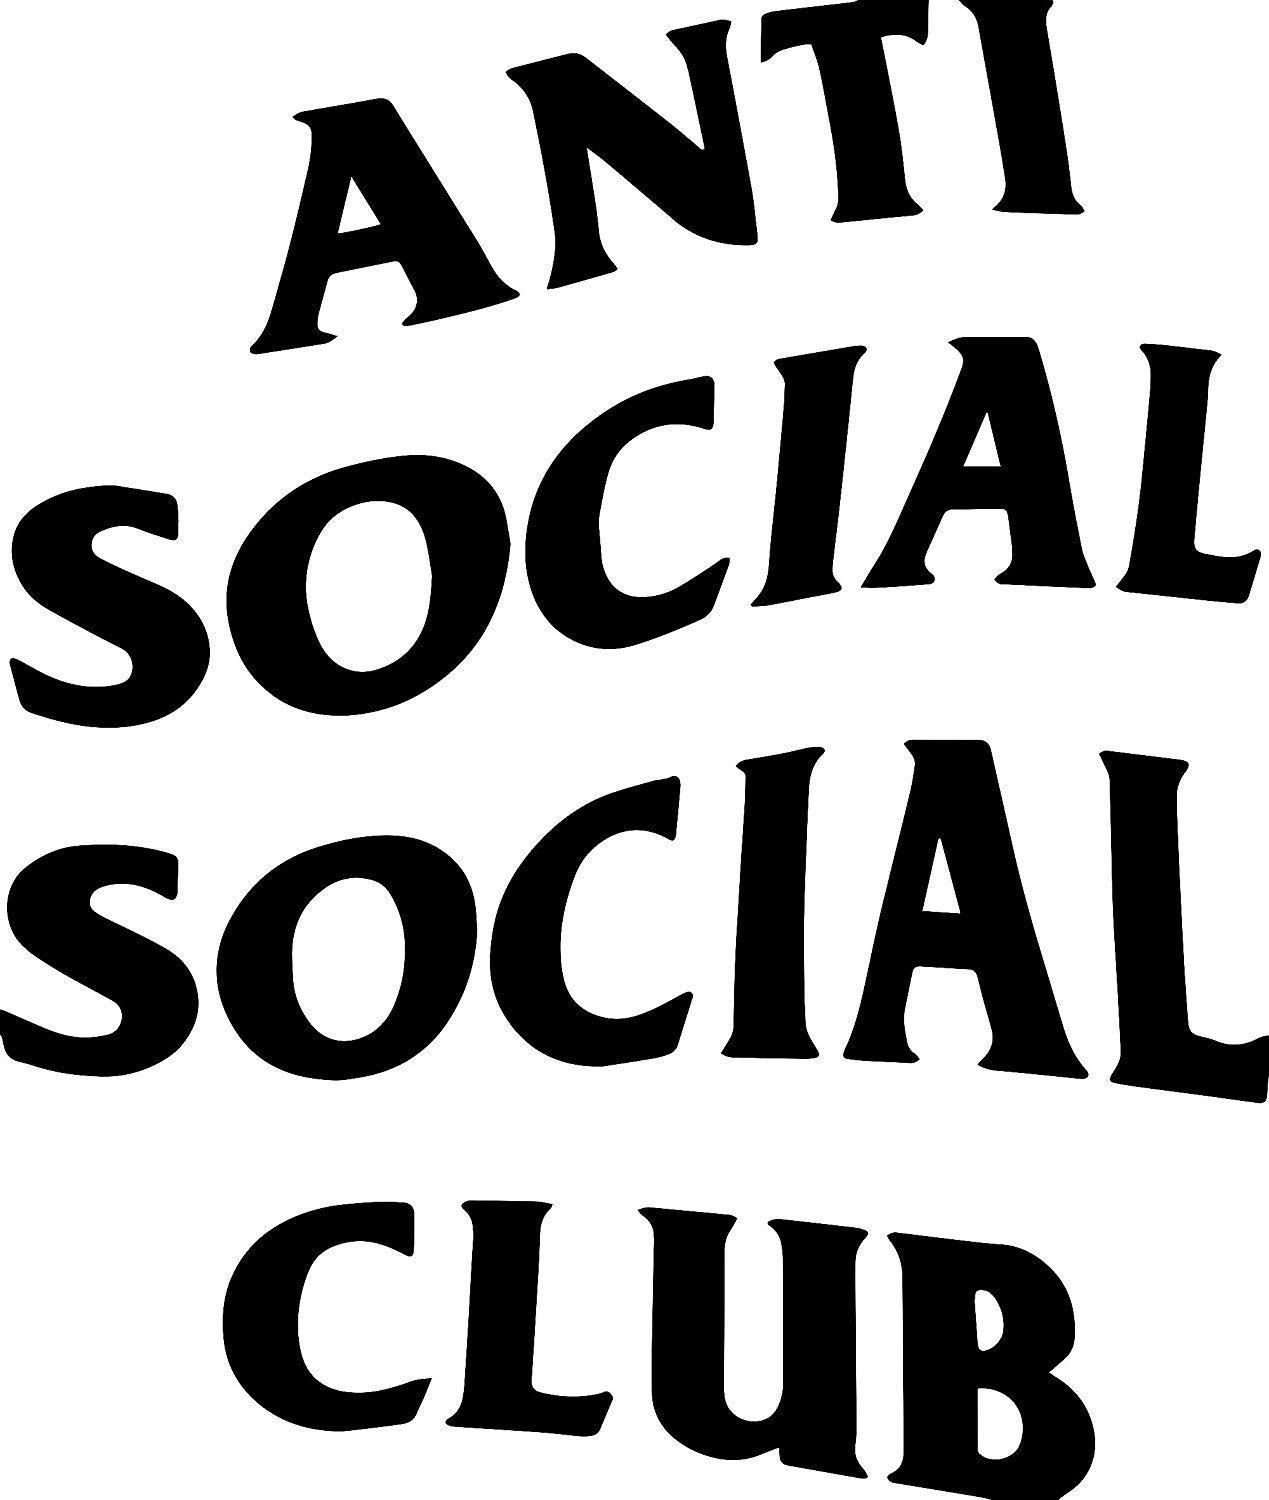 Anti Social Social Club Black Logo - Amazon.com : ANTI SOCIAL SOCIAL CLUB 5.5 Logo Decal Sticker